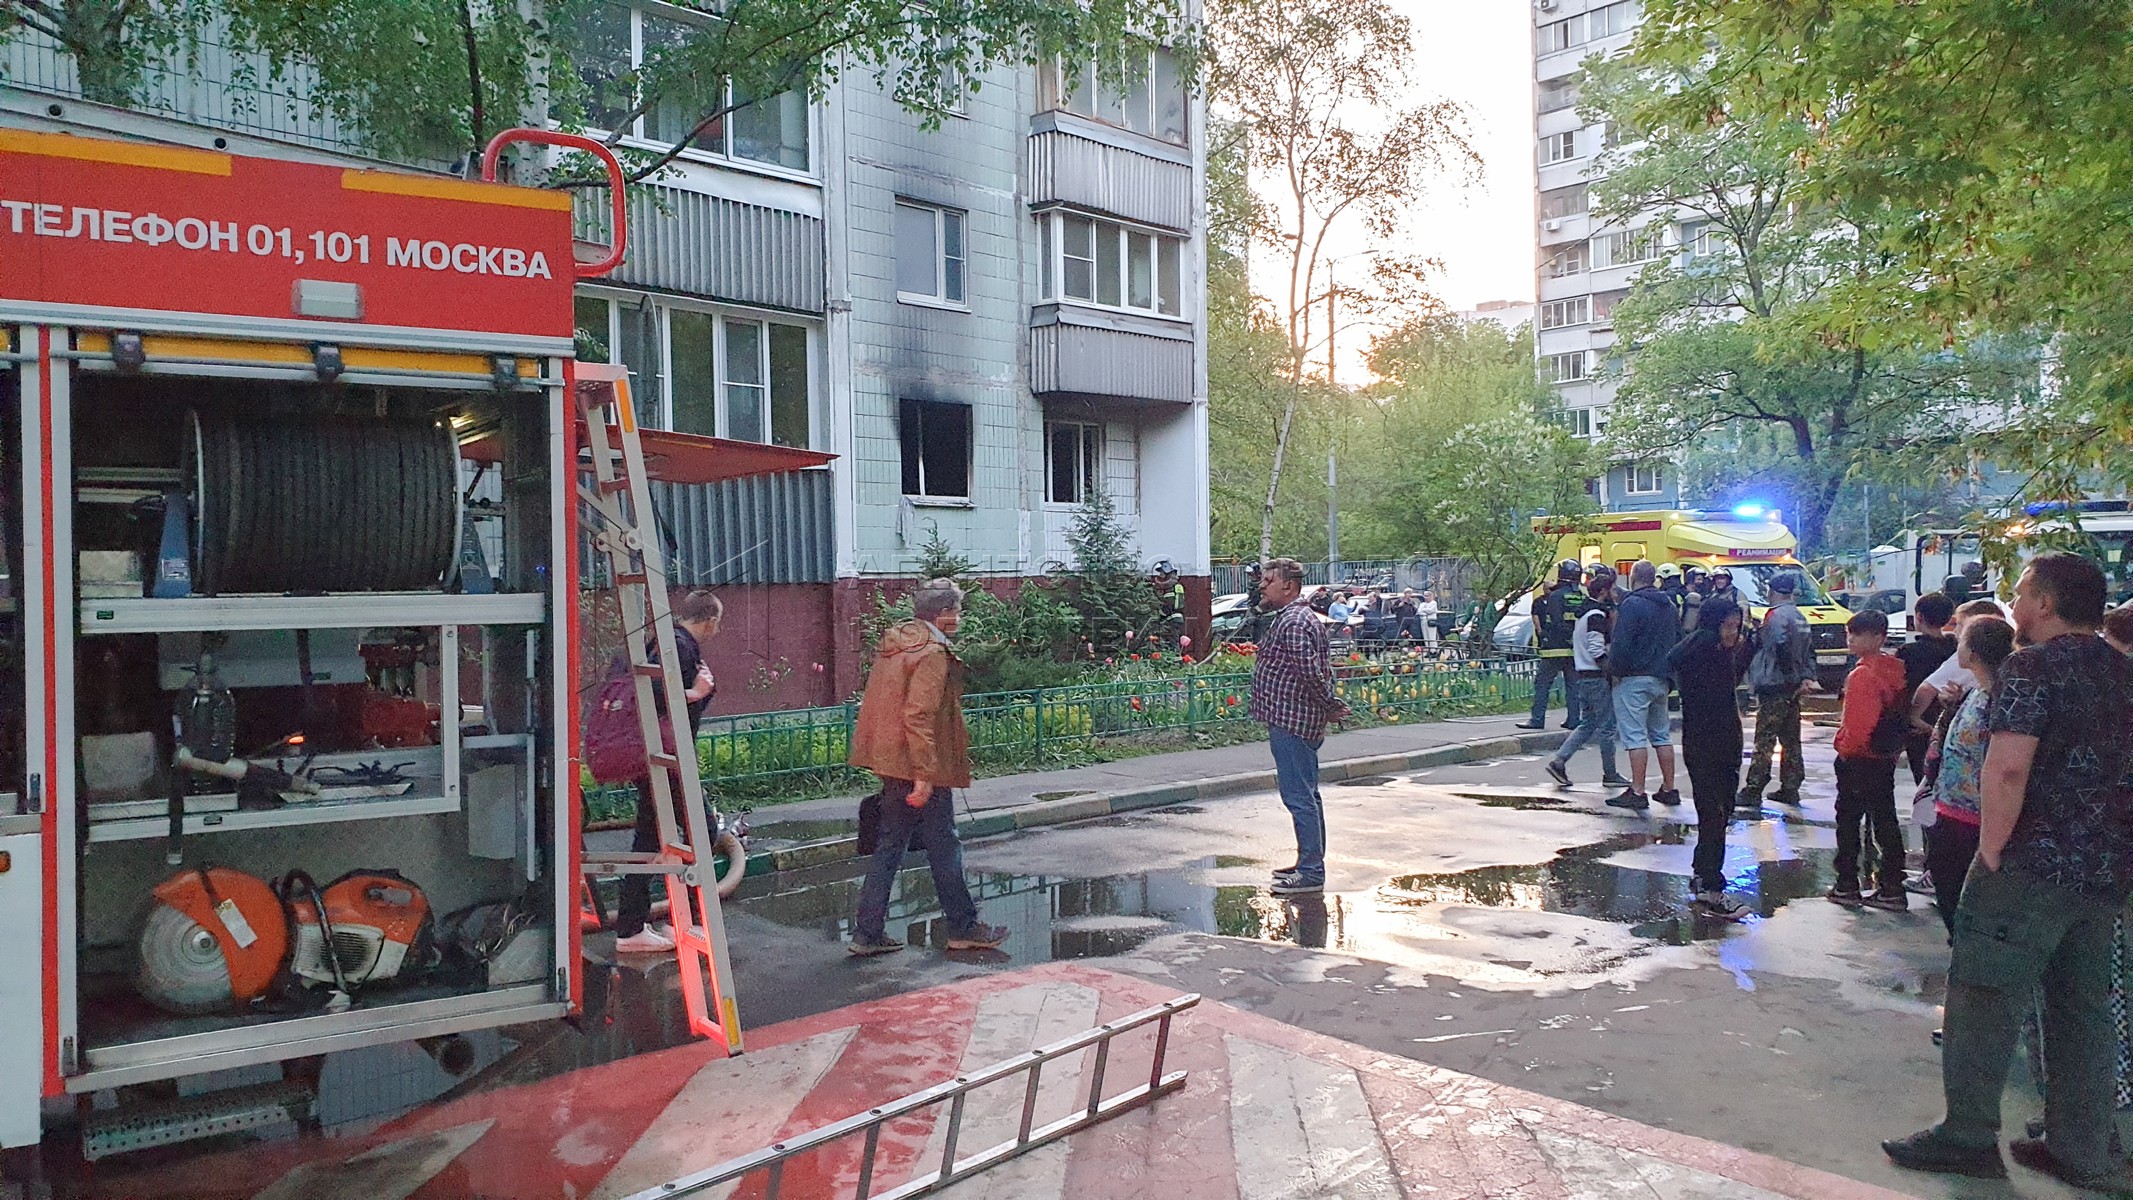 Какие улицы эвакуируют. Пожар в Медведково. Пожарные Москвы. Люди на улице. Эвакуация людей при пожаре.